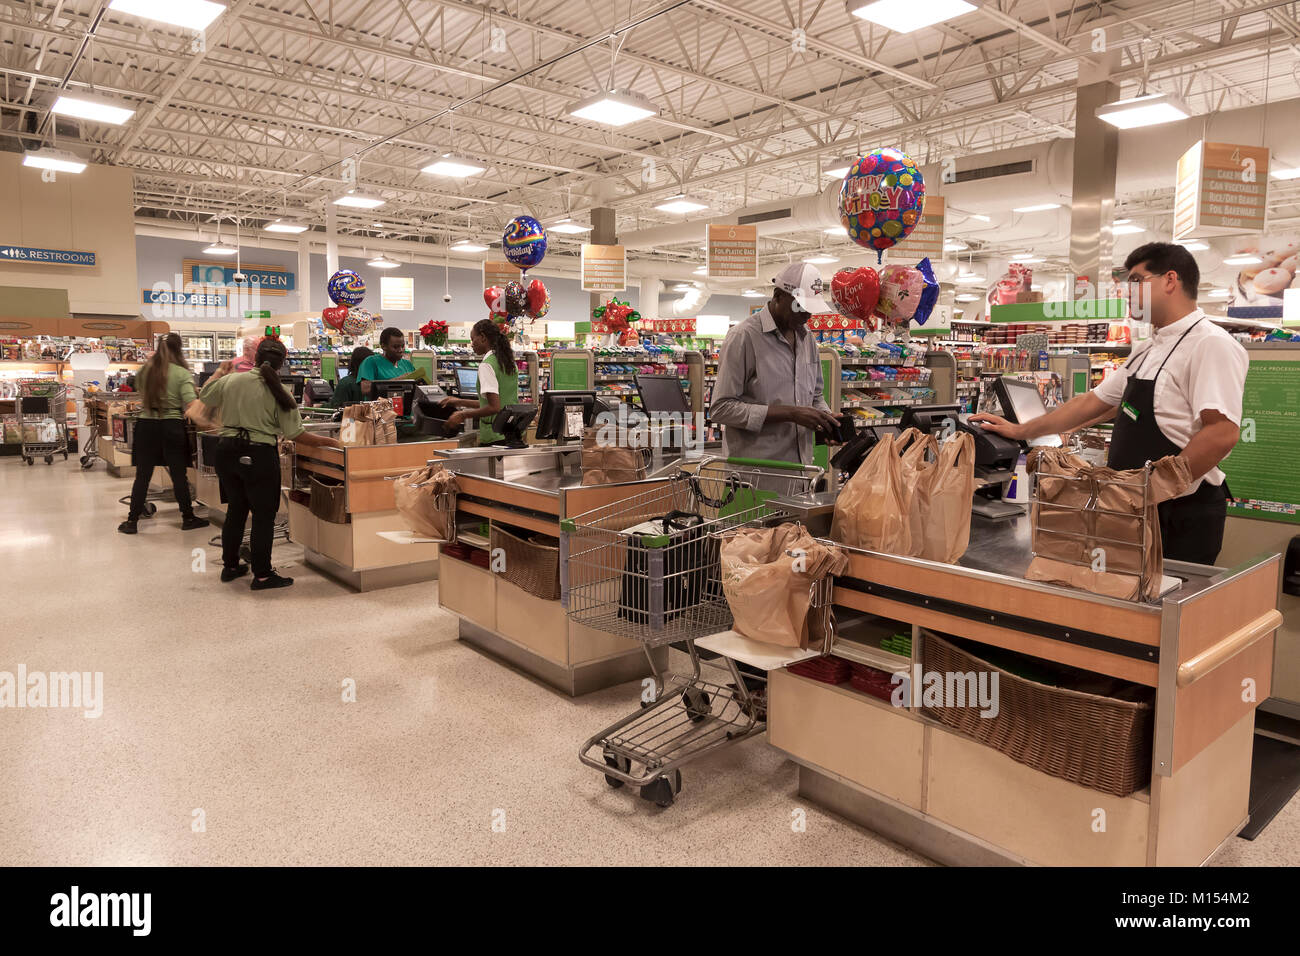 Caisses de supermarché Publix shoppers entretien en Floride, États-Unis. Banque D'Images